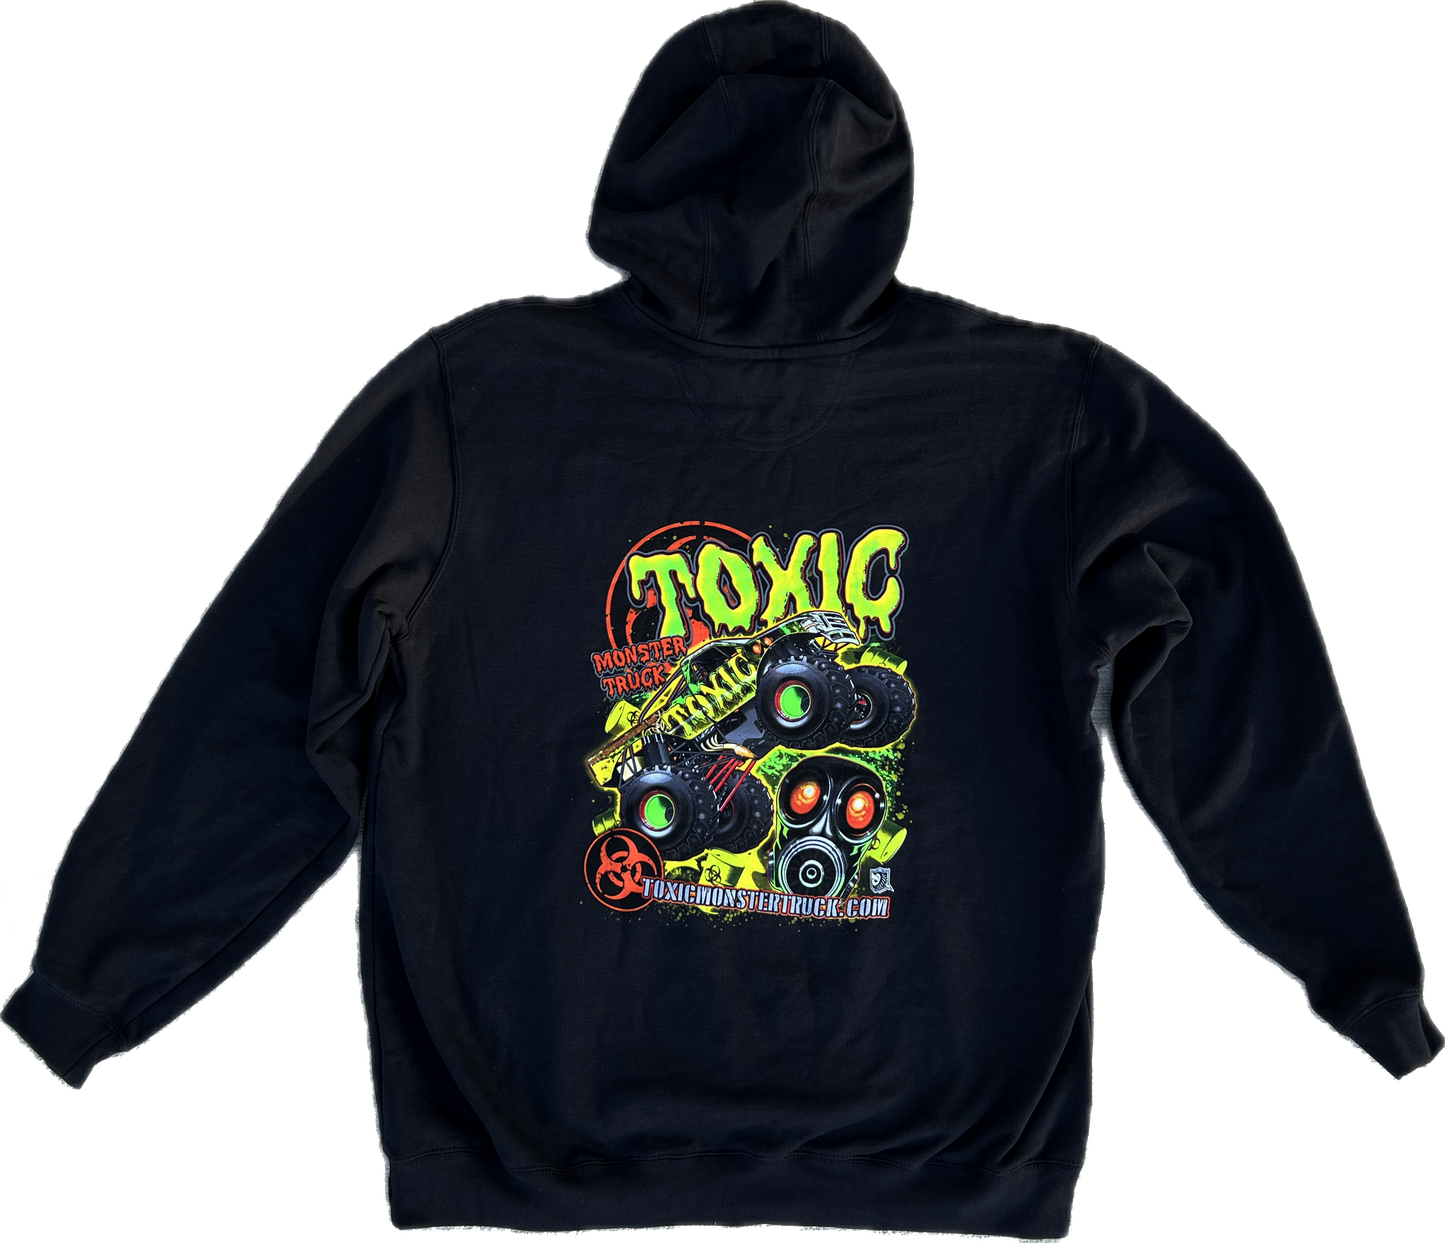 Toxic Carhartt Hoodie - Adult Black